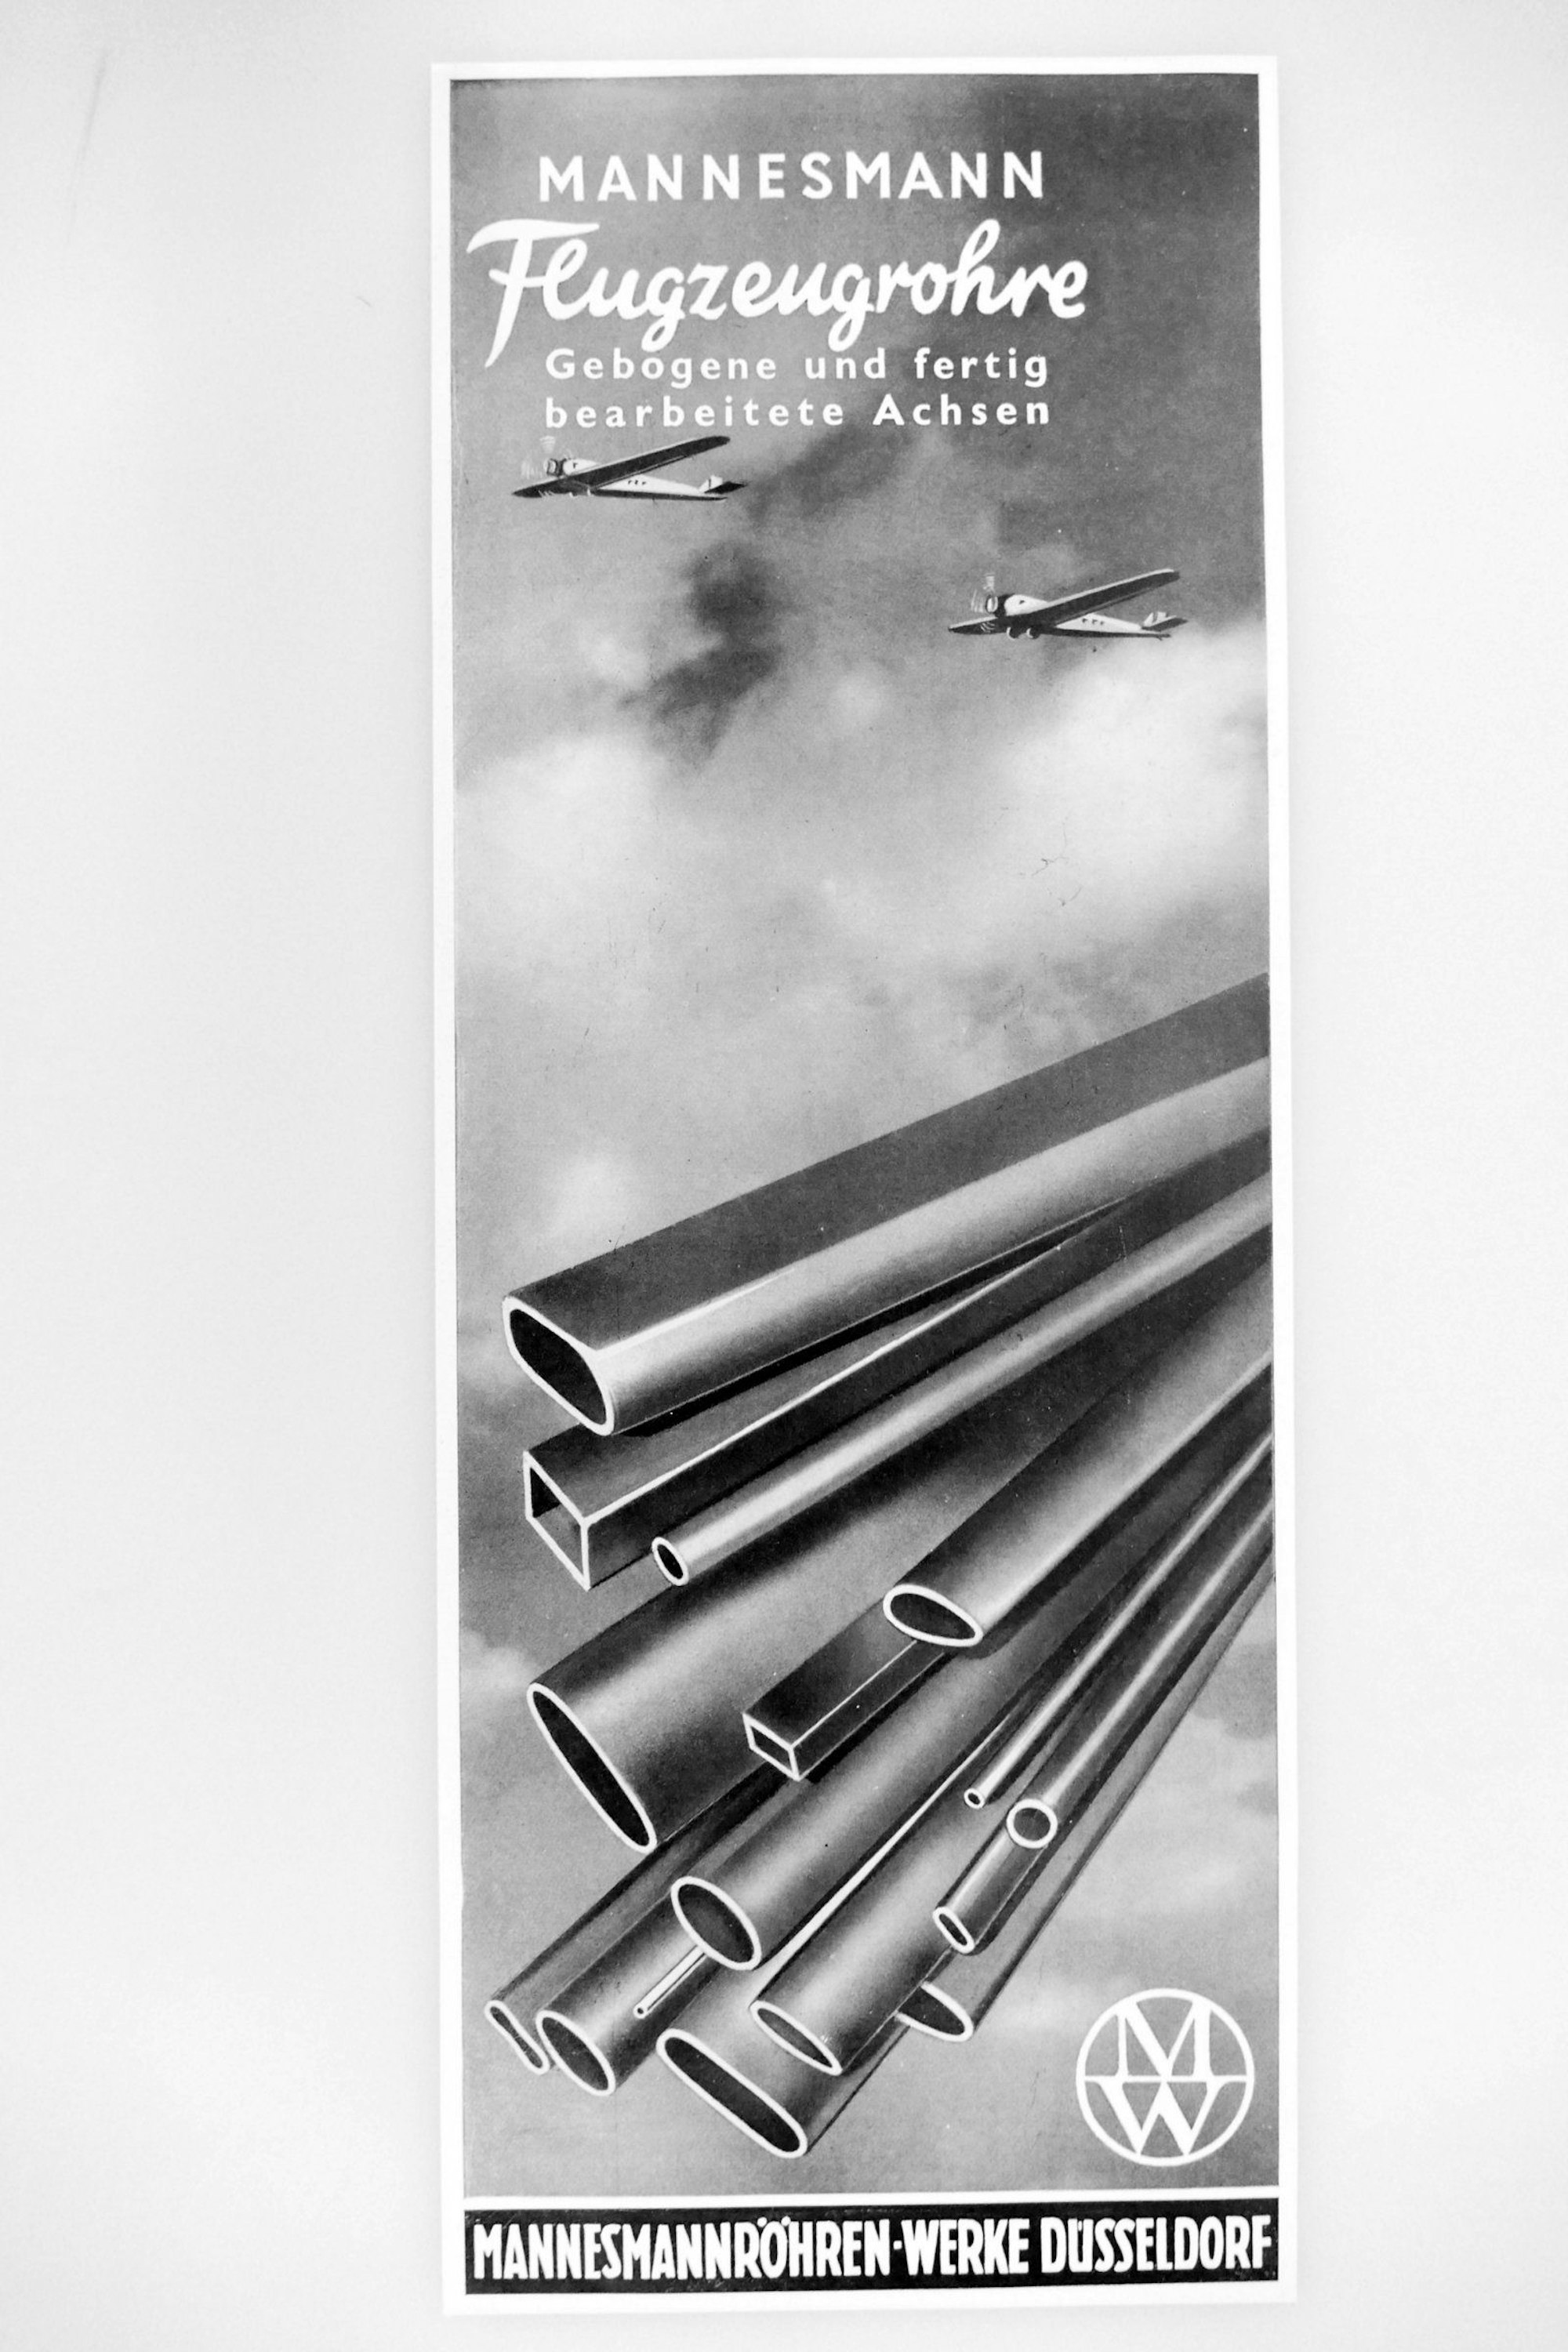 Werbeplakat für Flugzeugröhren aus dem Hause Mannesmann, noch in schwarzweiß.